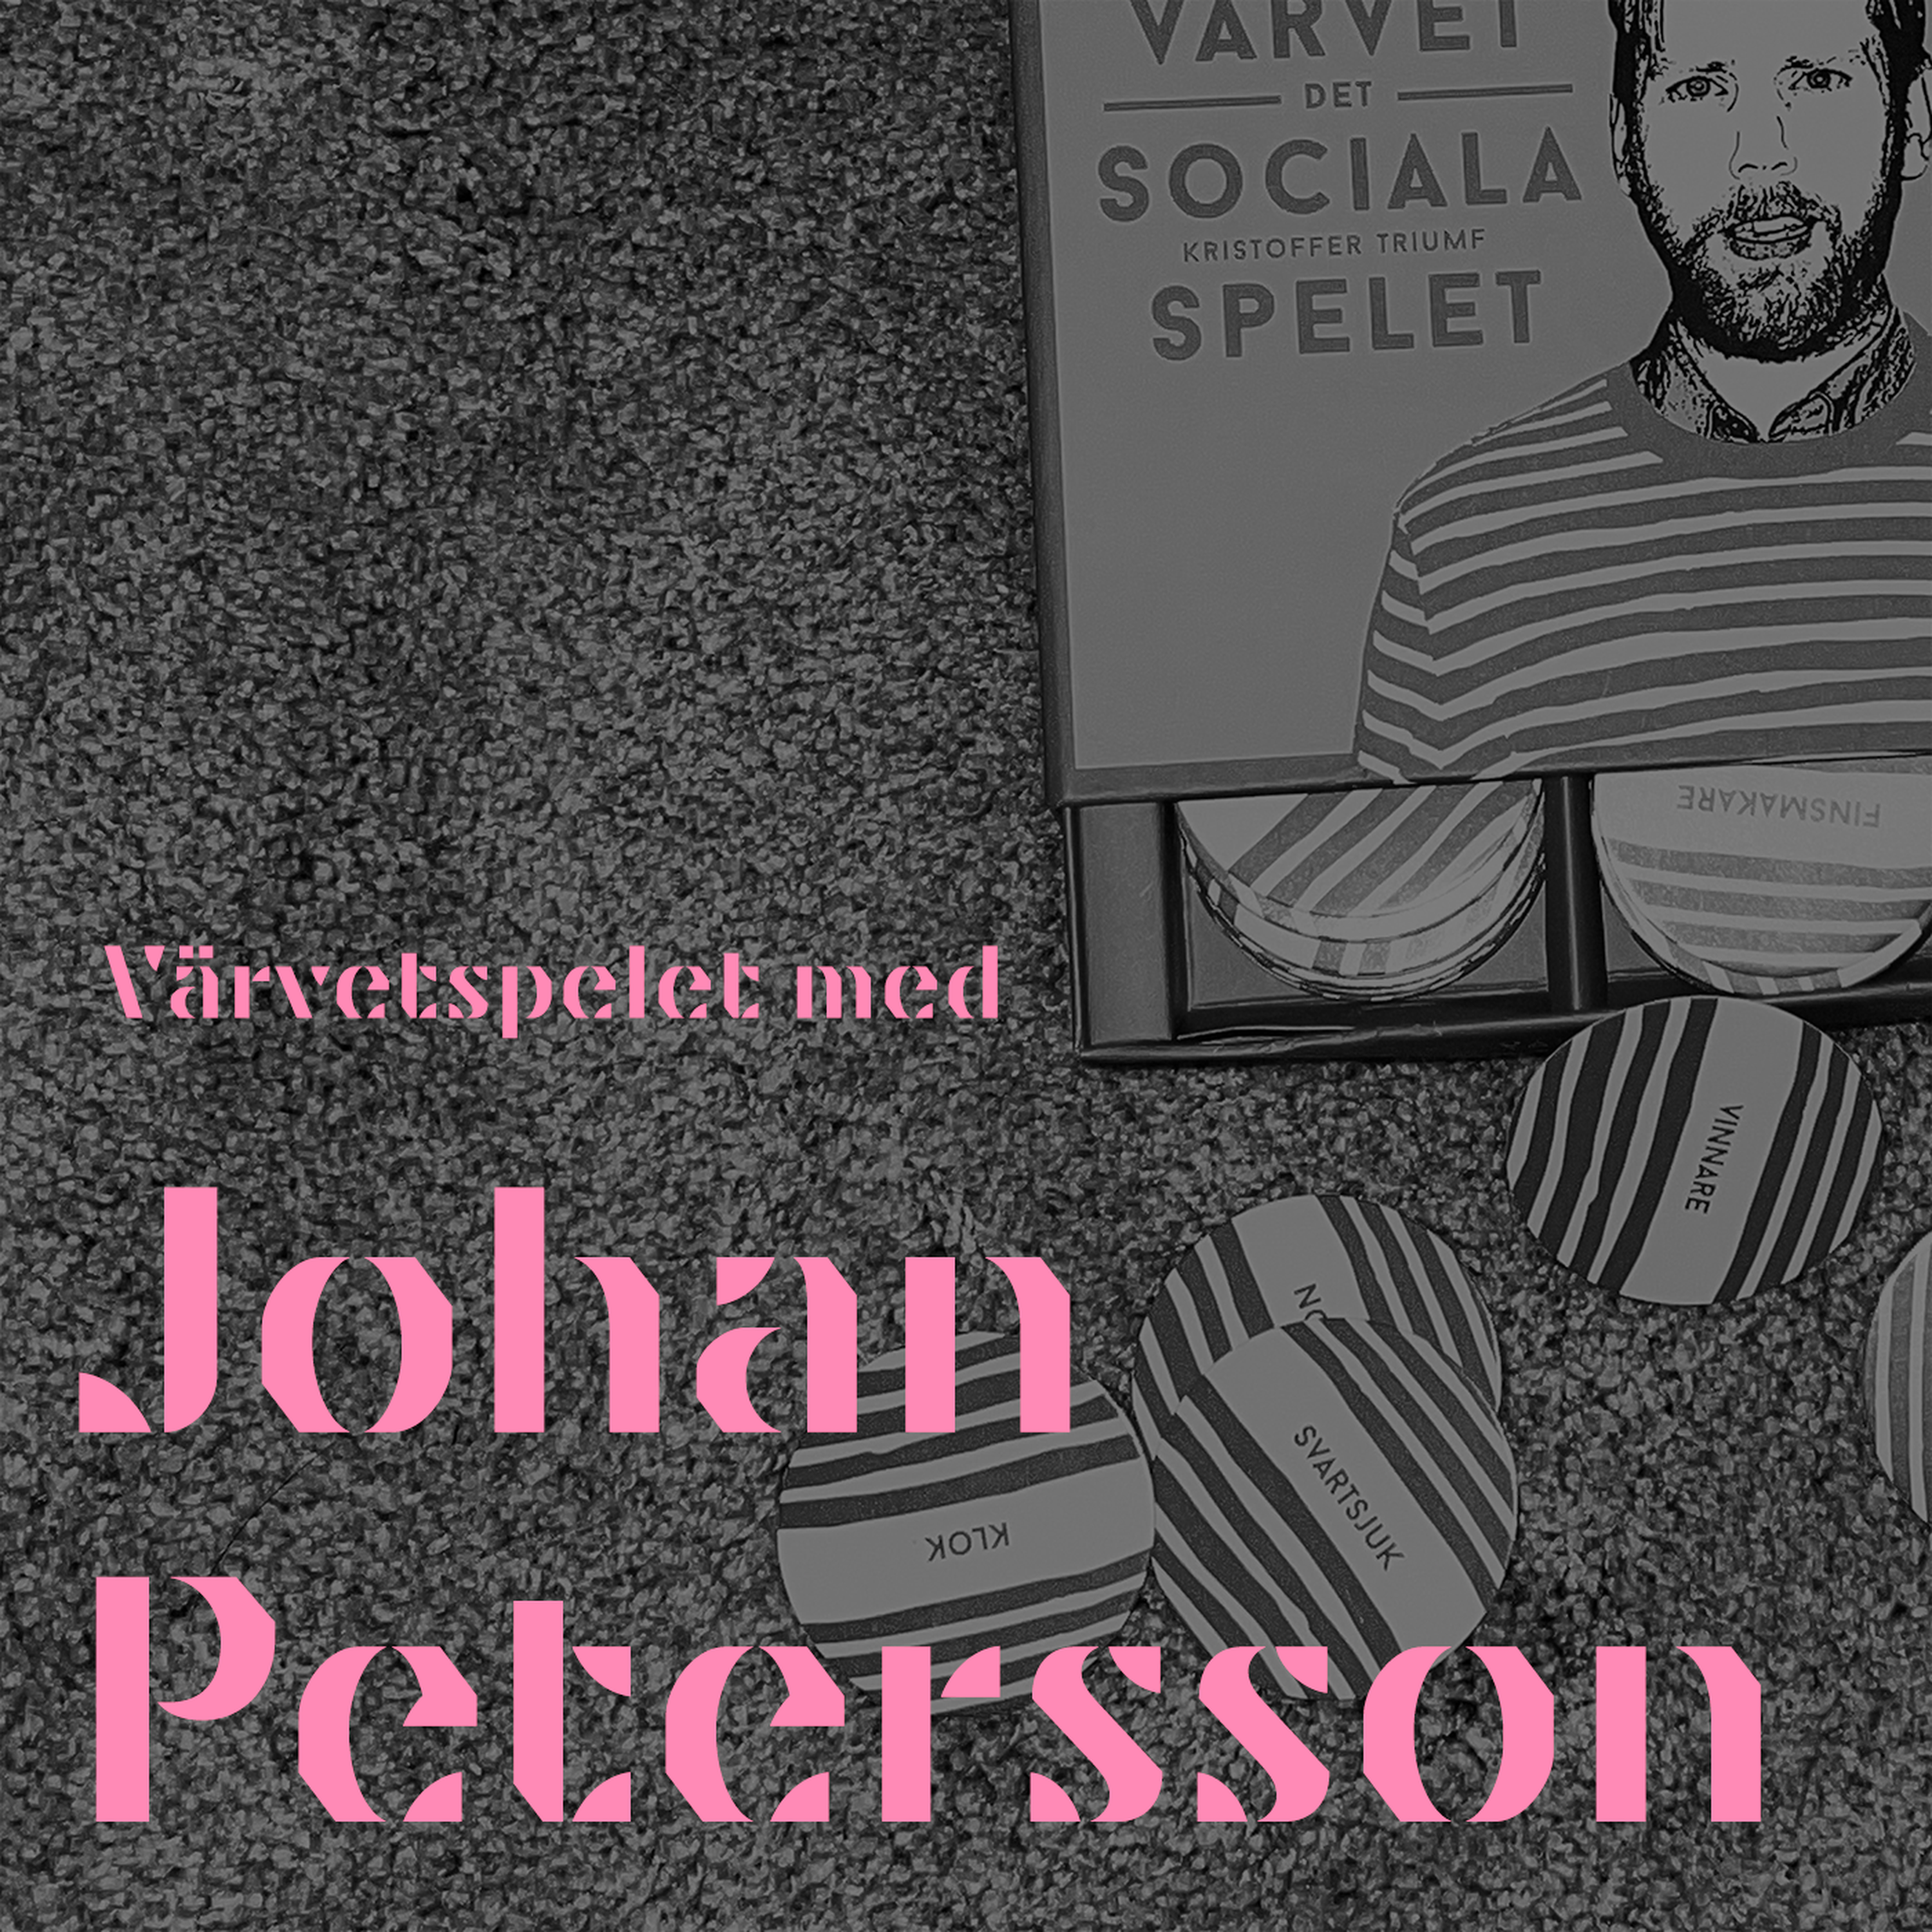 VÄRVETSPELET med Johan Petersson